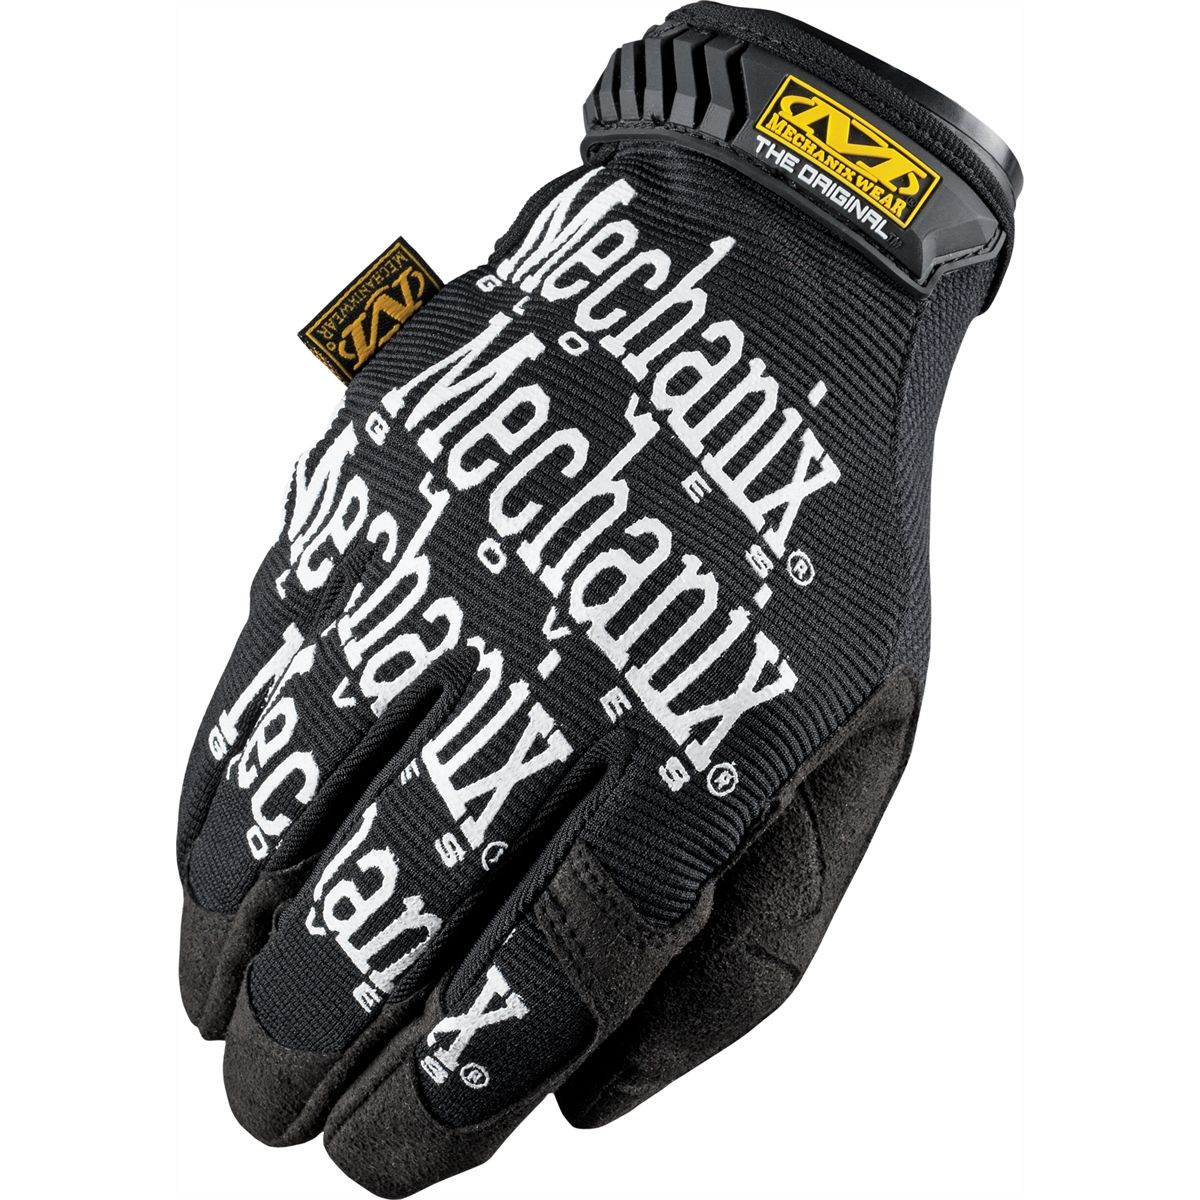 Mechanix Wear Original Glove, Black (Size: XXXS - 3XL)